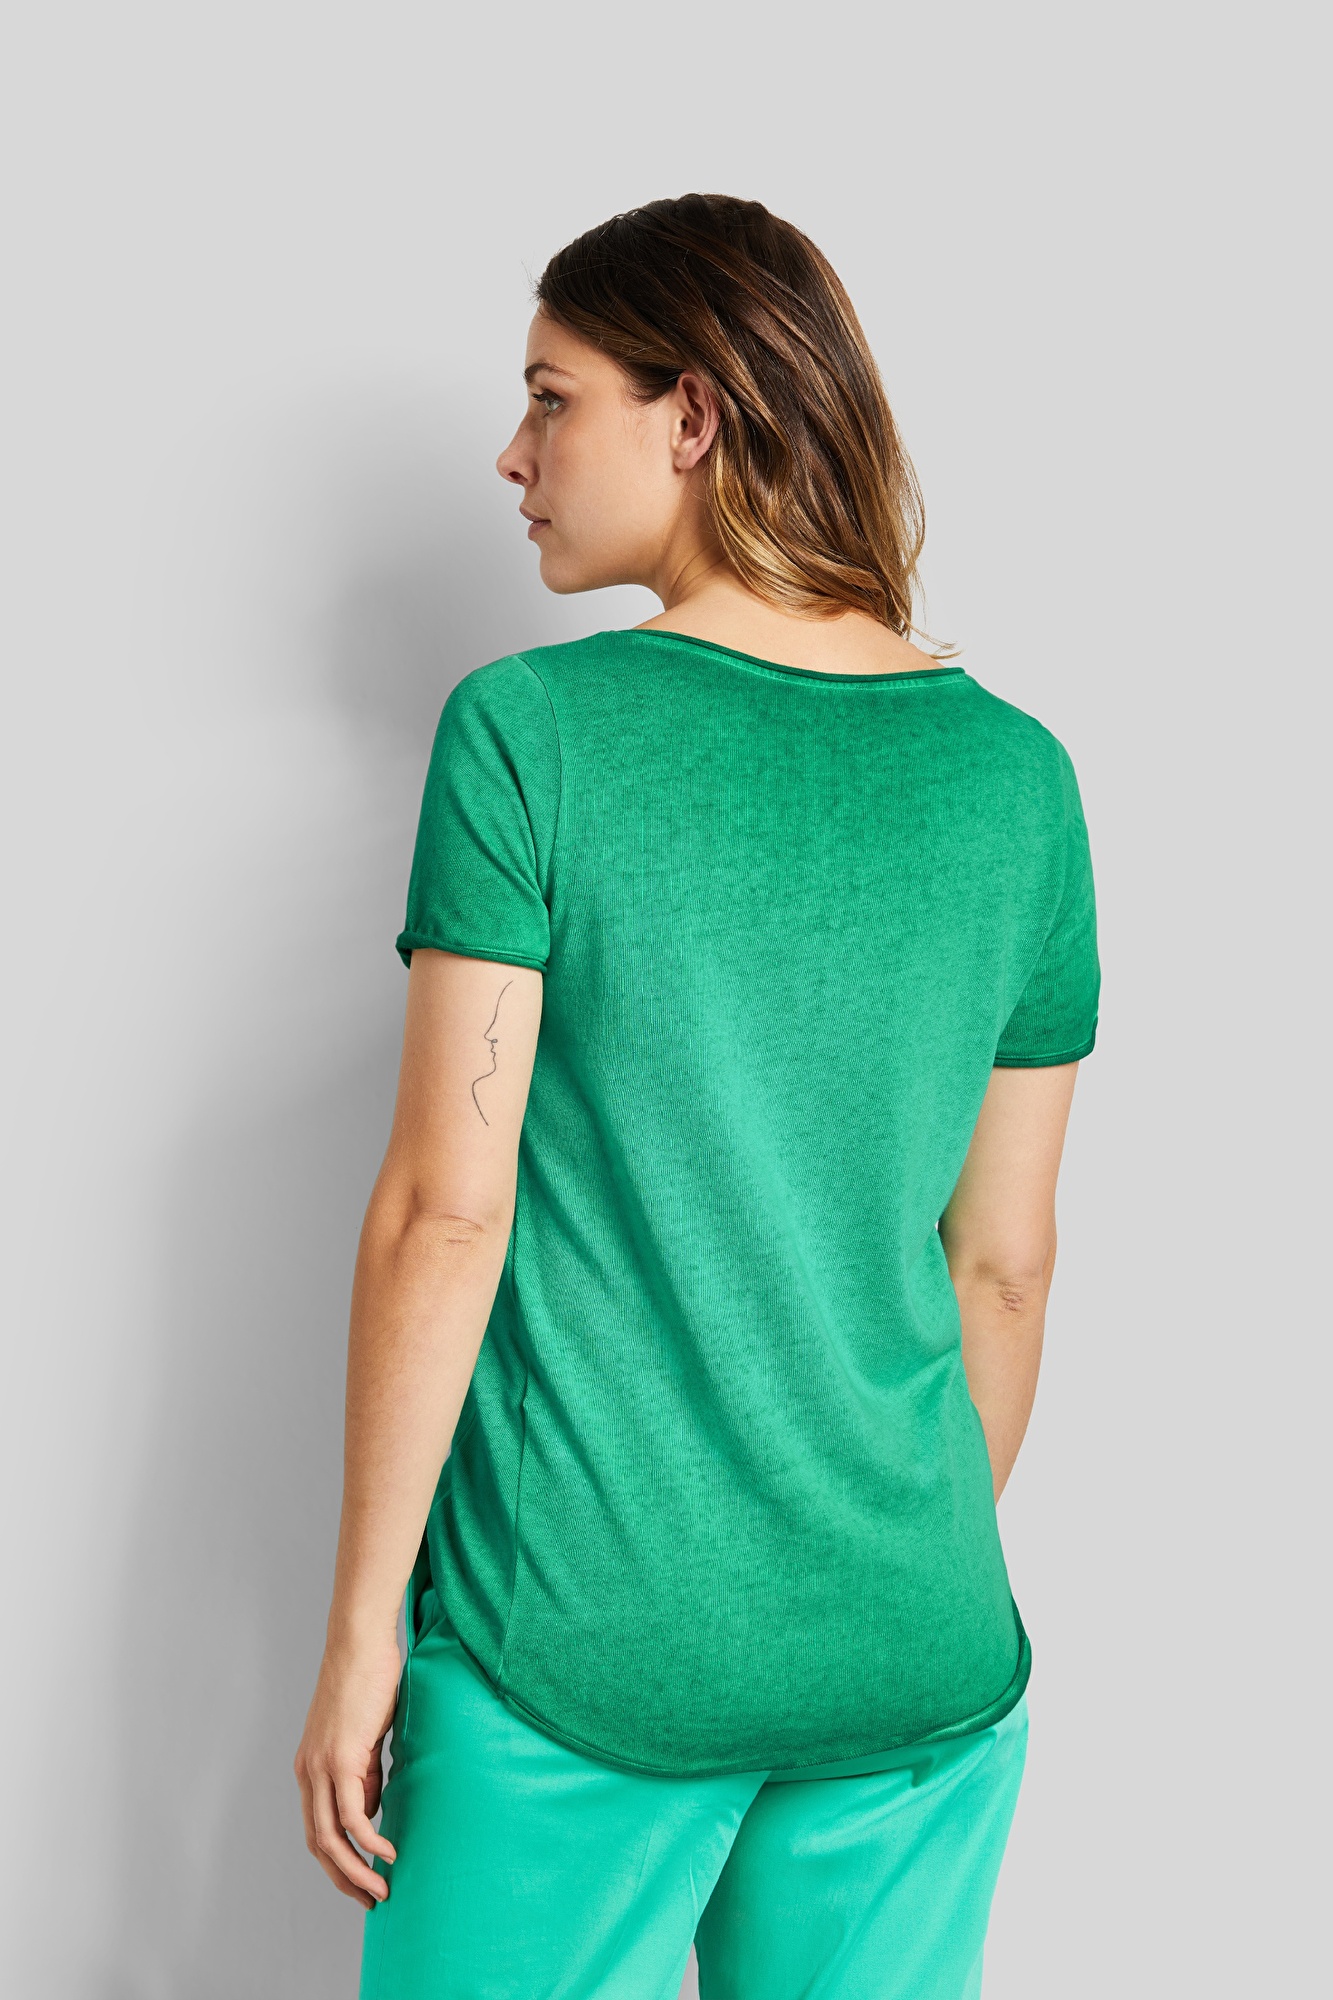 Rundhals T-shirt mit leicht verwaschener Optik in mint | bugatti